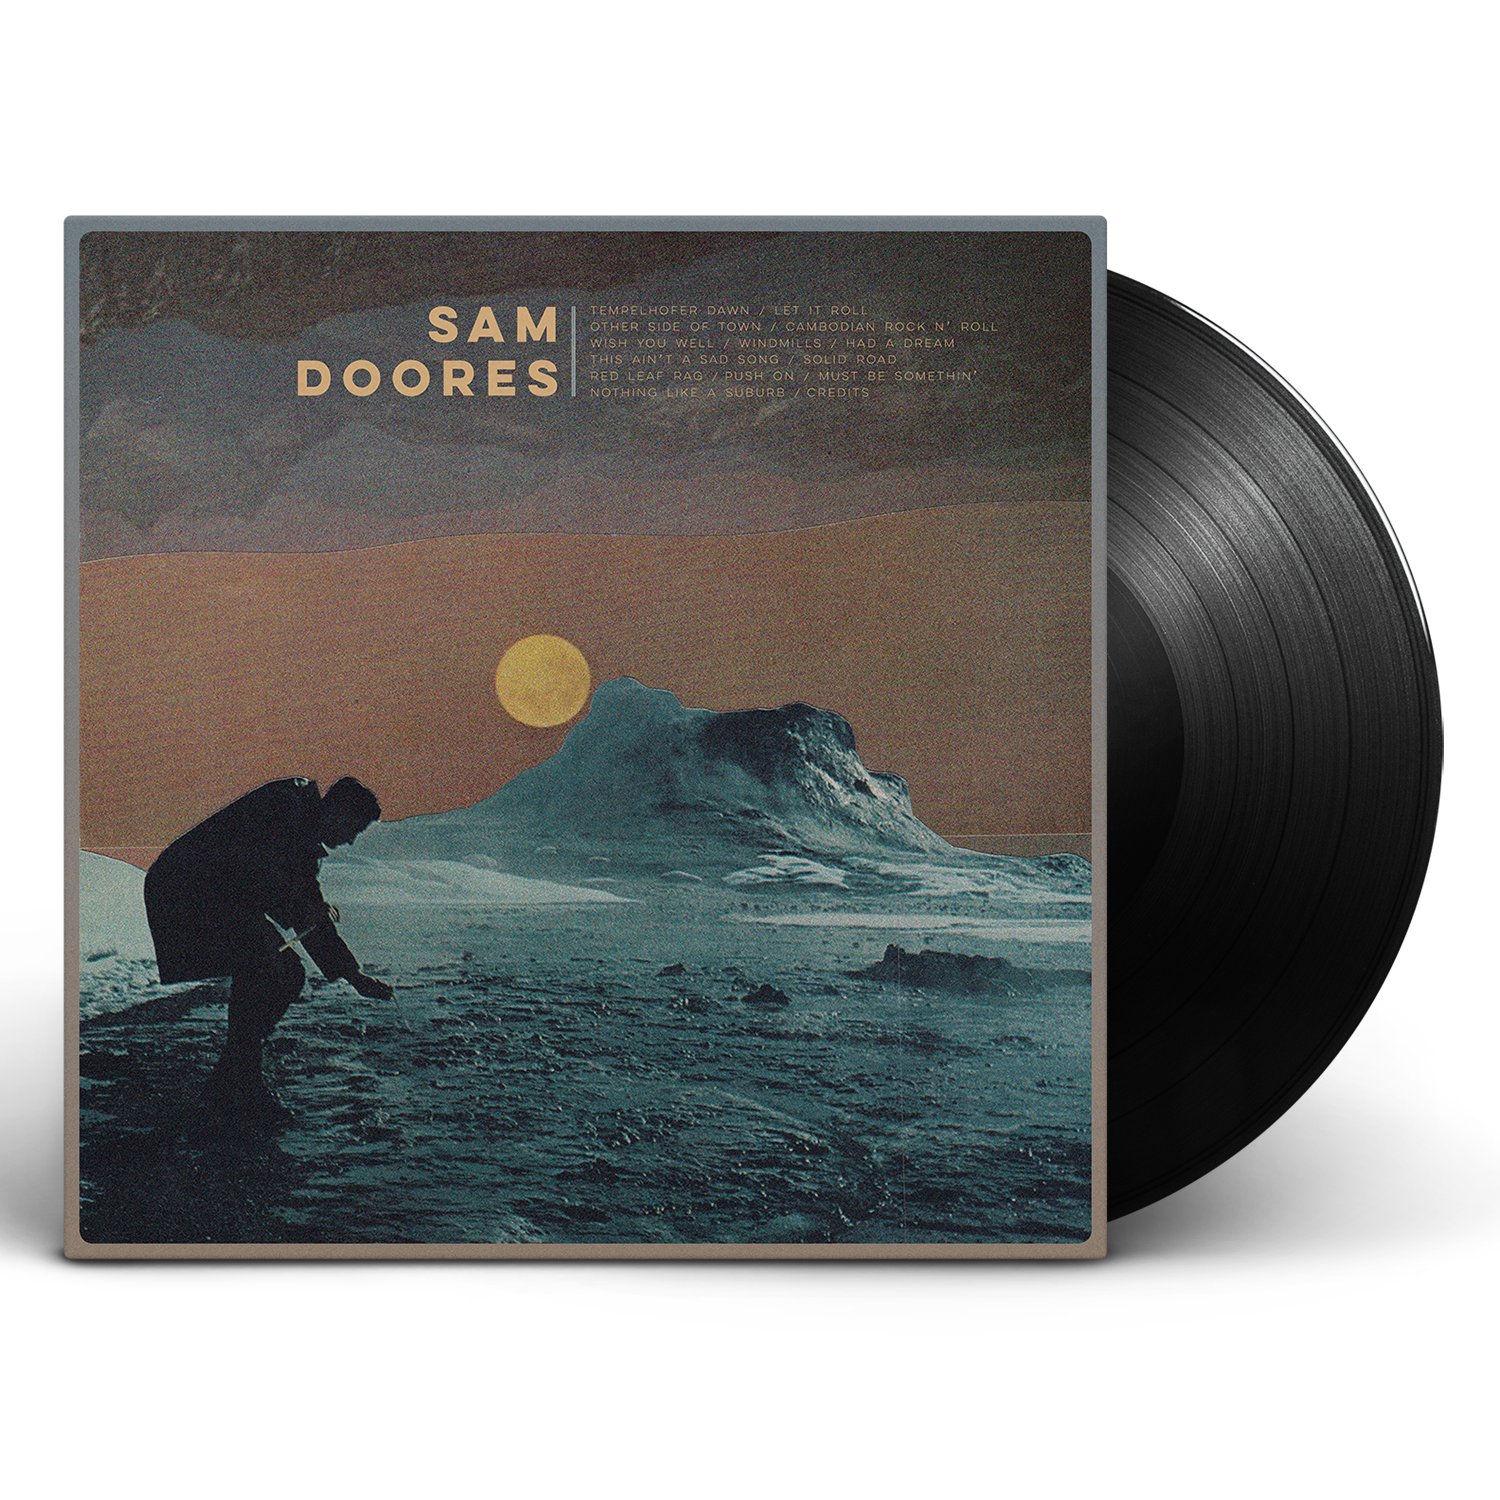 Sam Doores - Sam Doores [Vinyl]